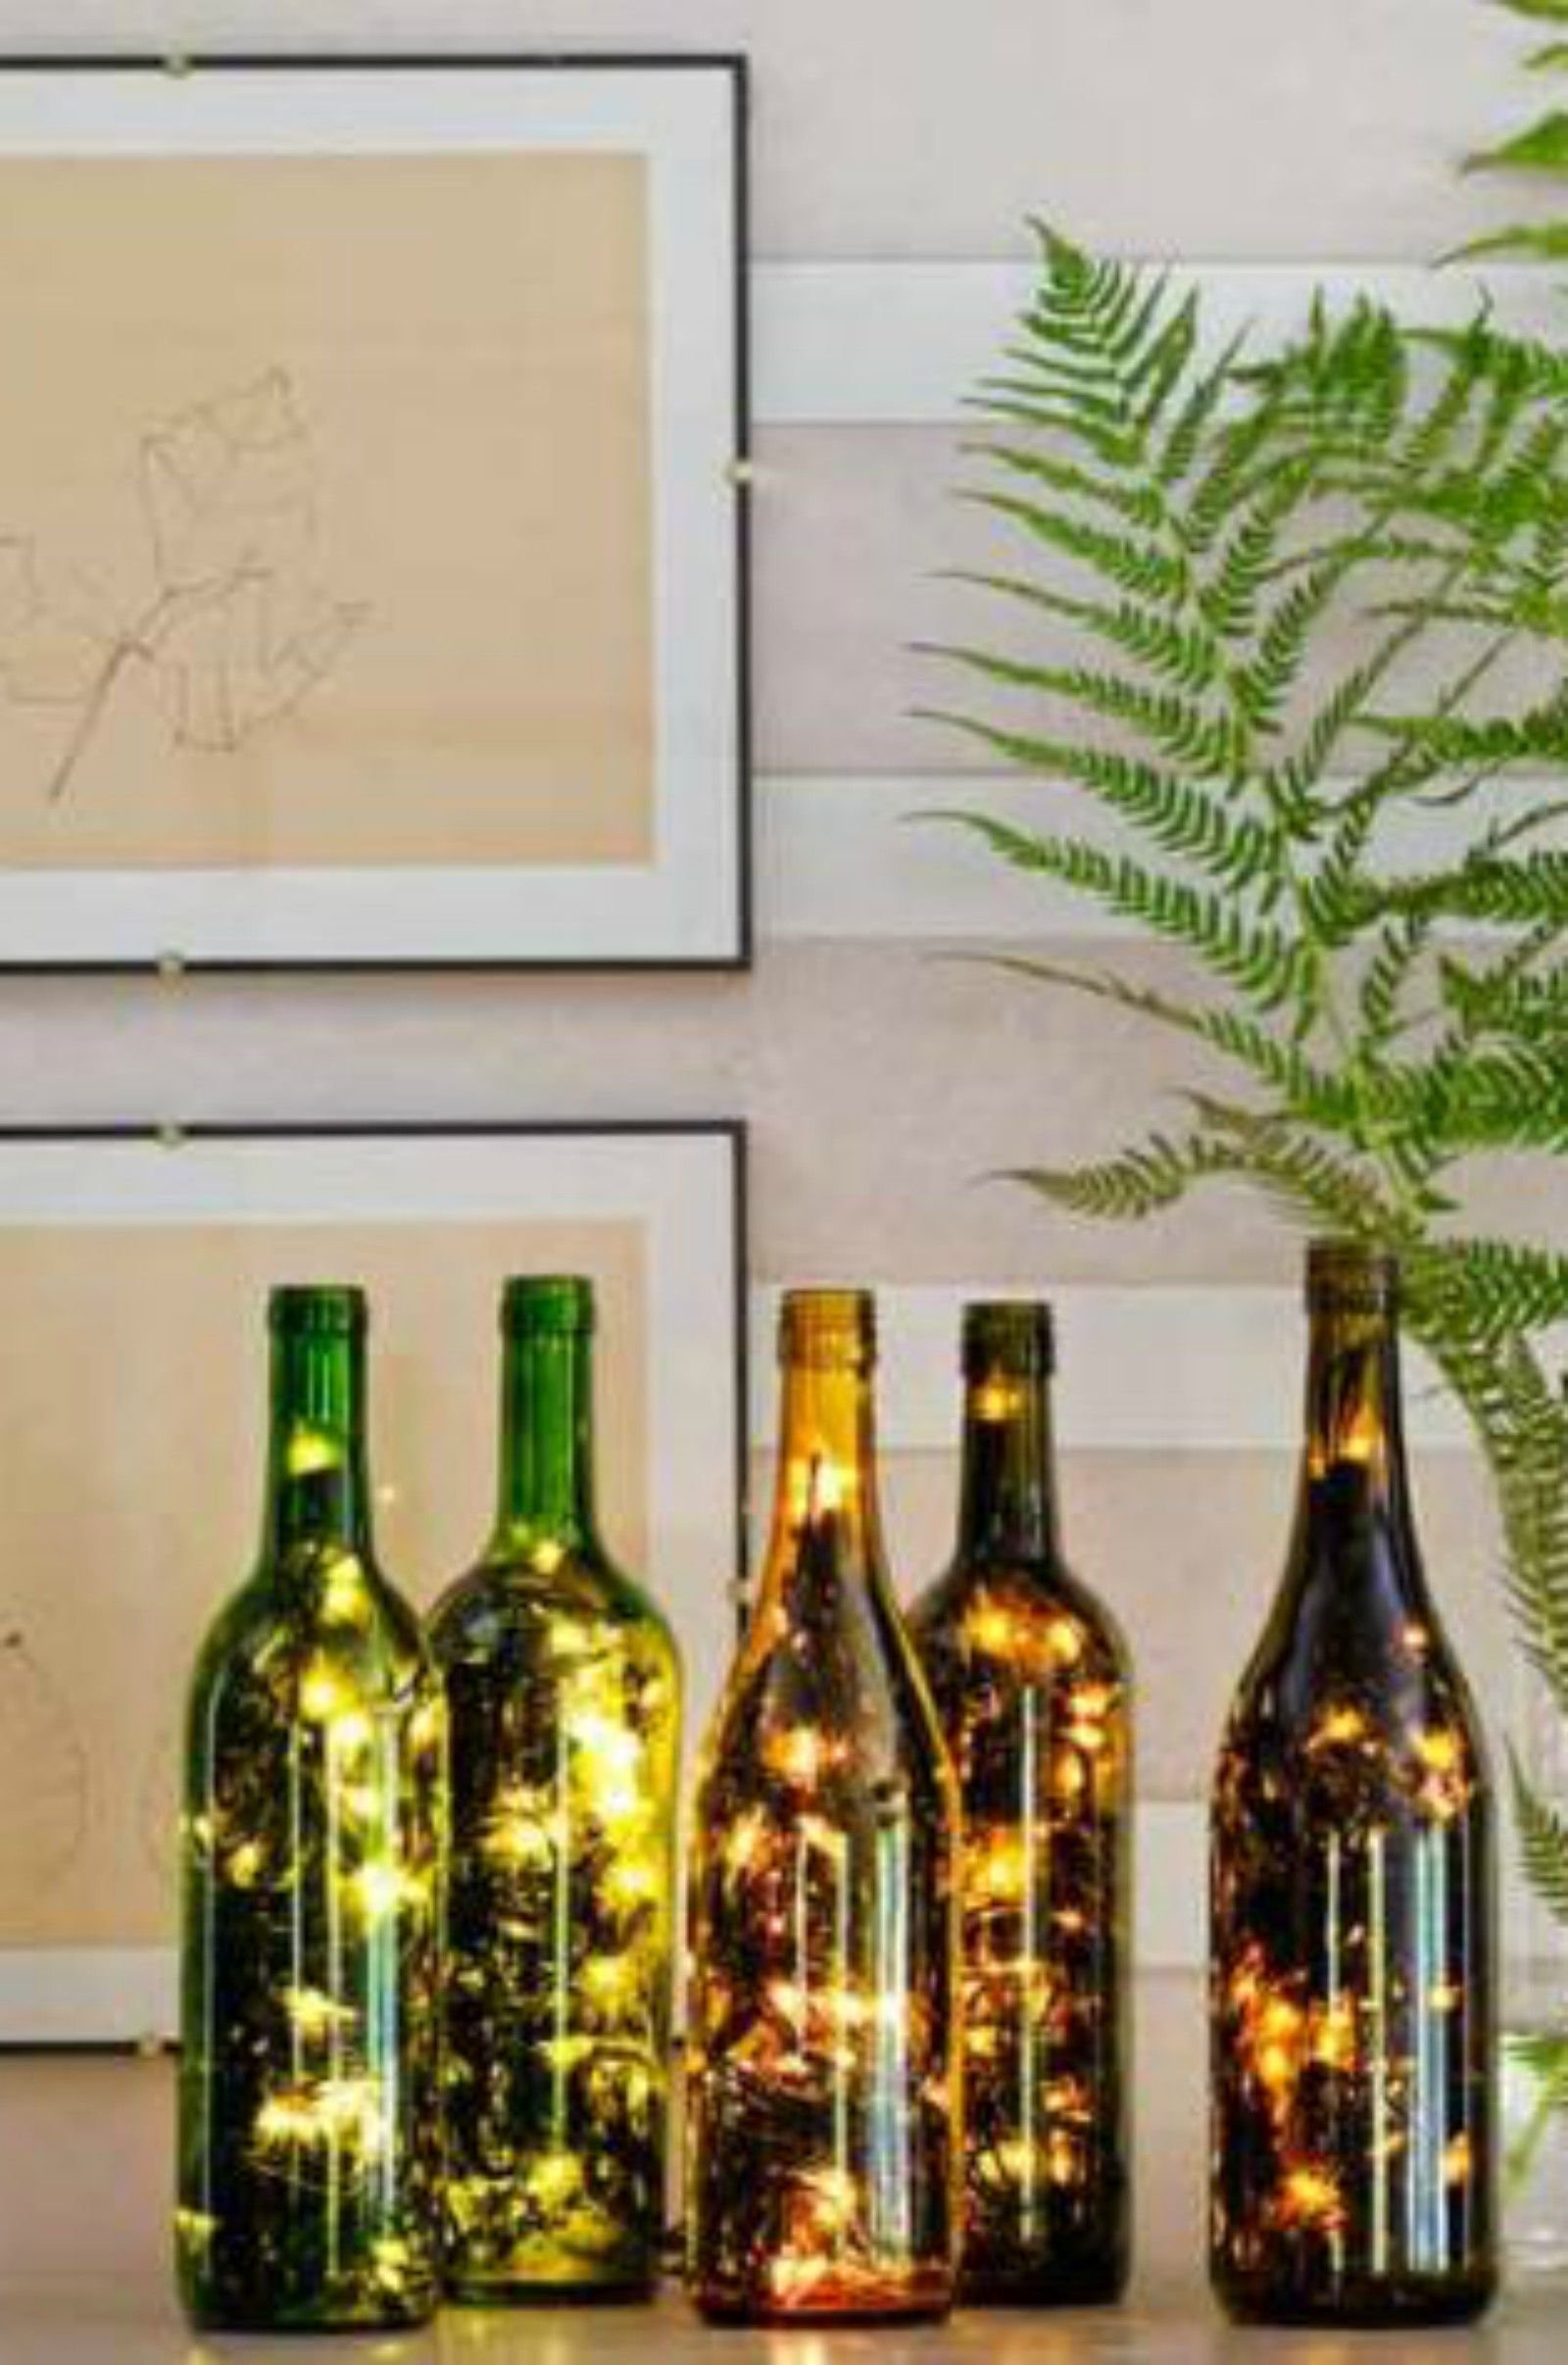 10 Great Ideas For Empty Wine Bottles 24 diy wine bottle crafts empty wine bottle decoration ideas 1 2022